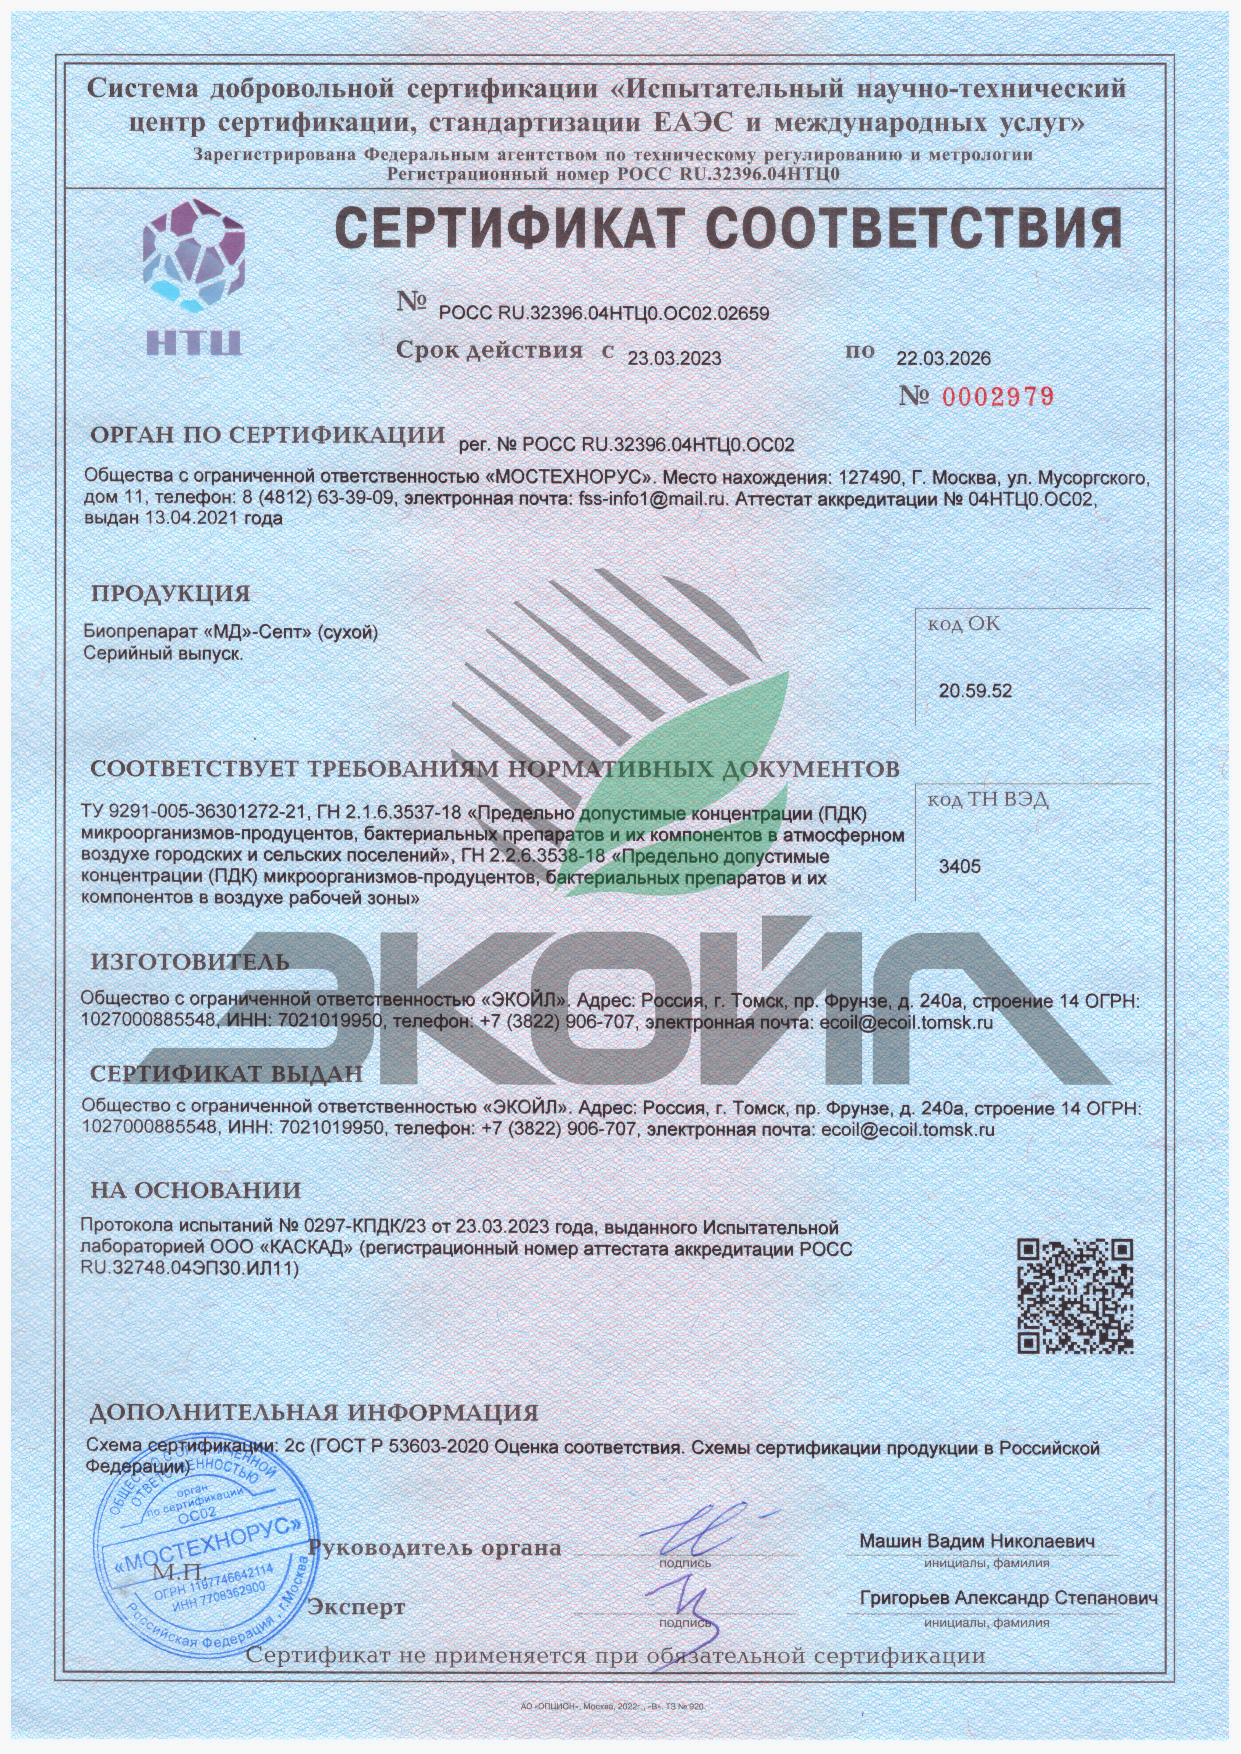 Сертификат соответствия ТУ - Биопрепарат "МД"-Септ" (сухой)